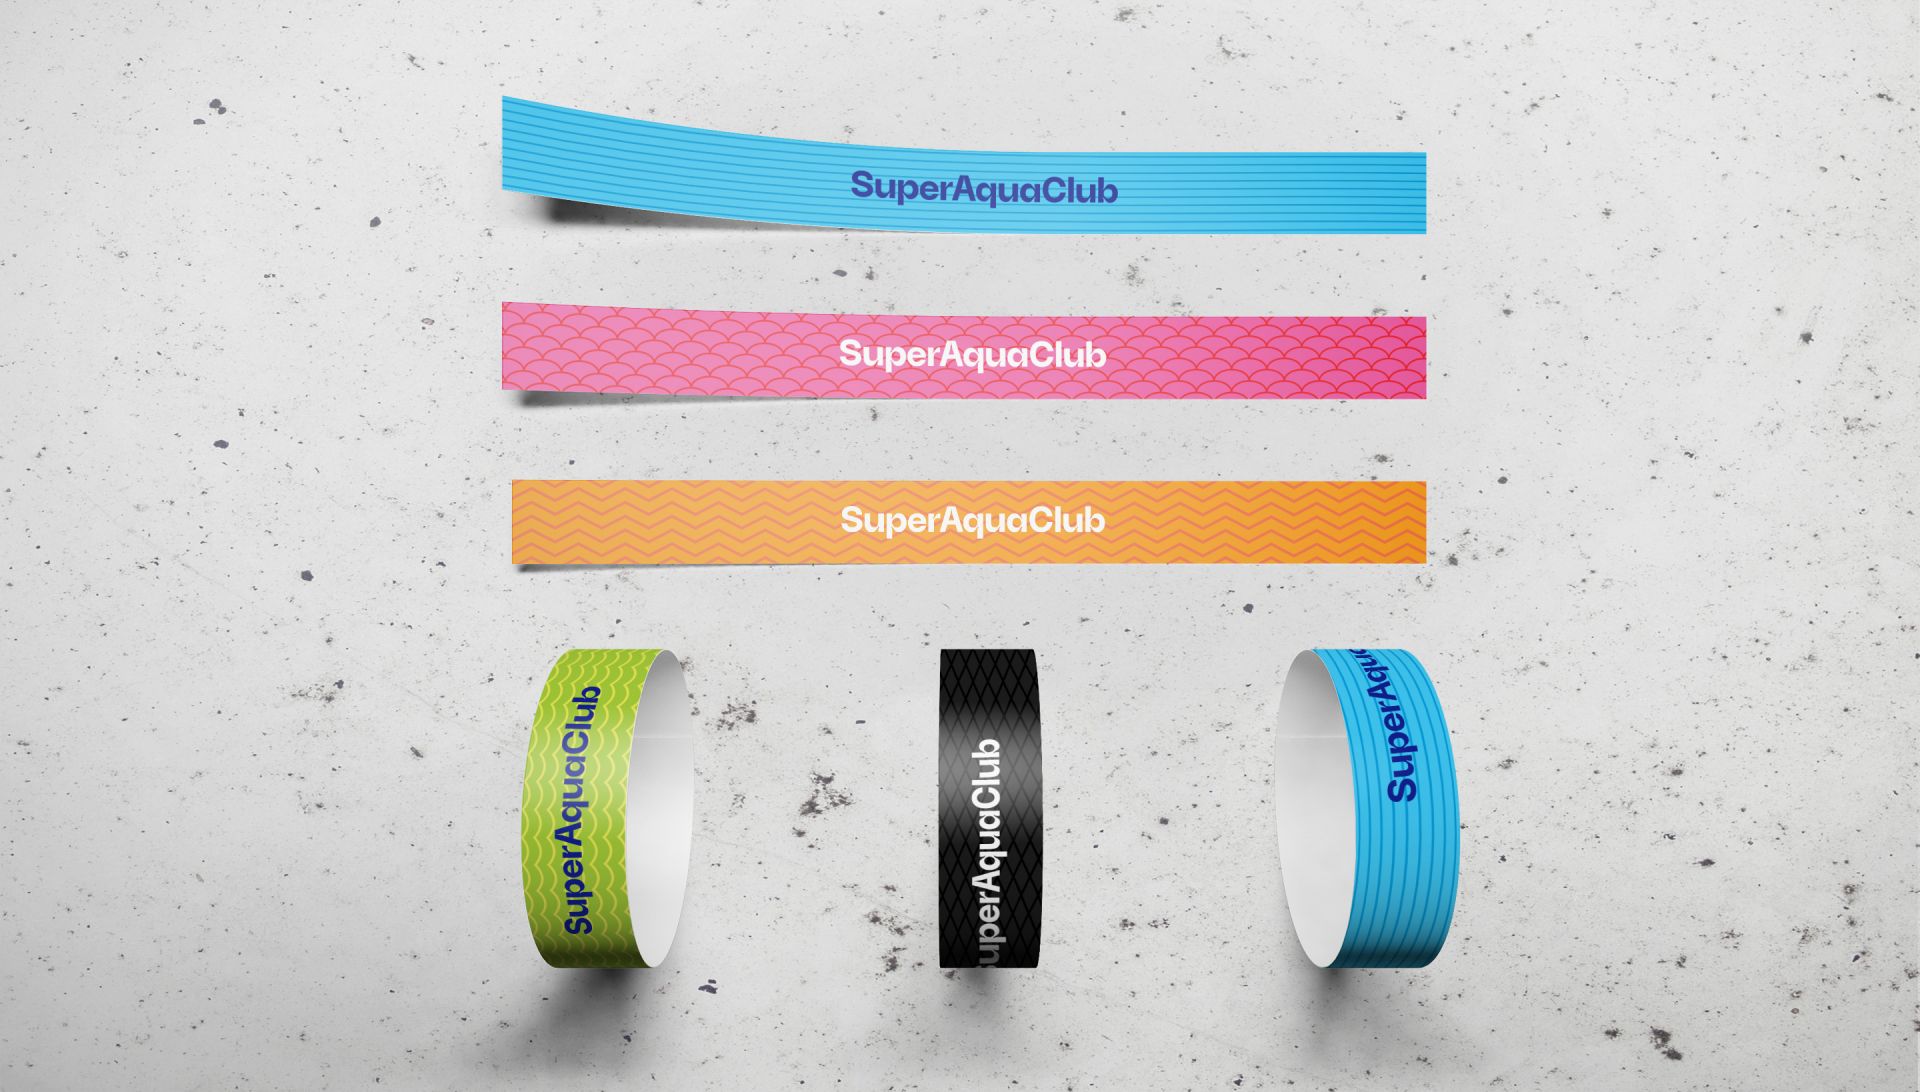 Super Aqua Club (branding)